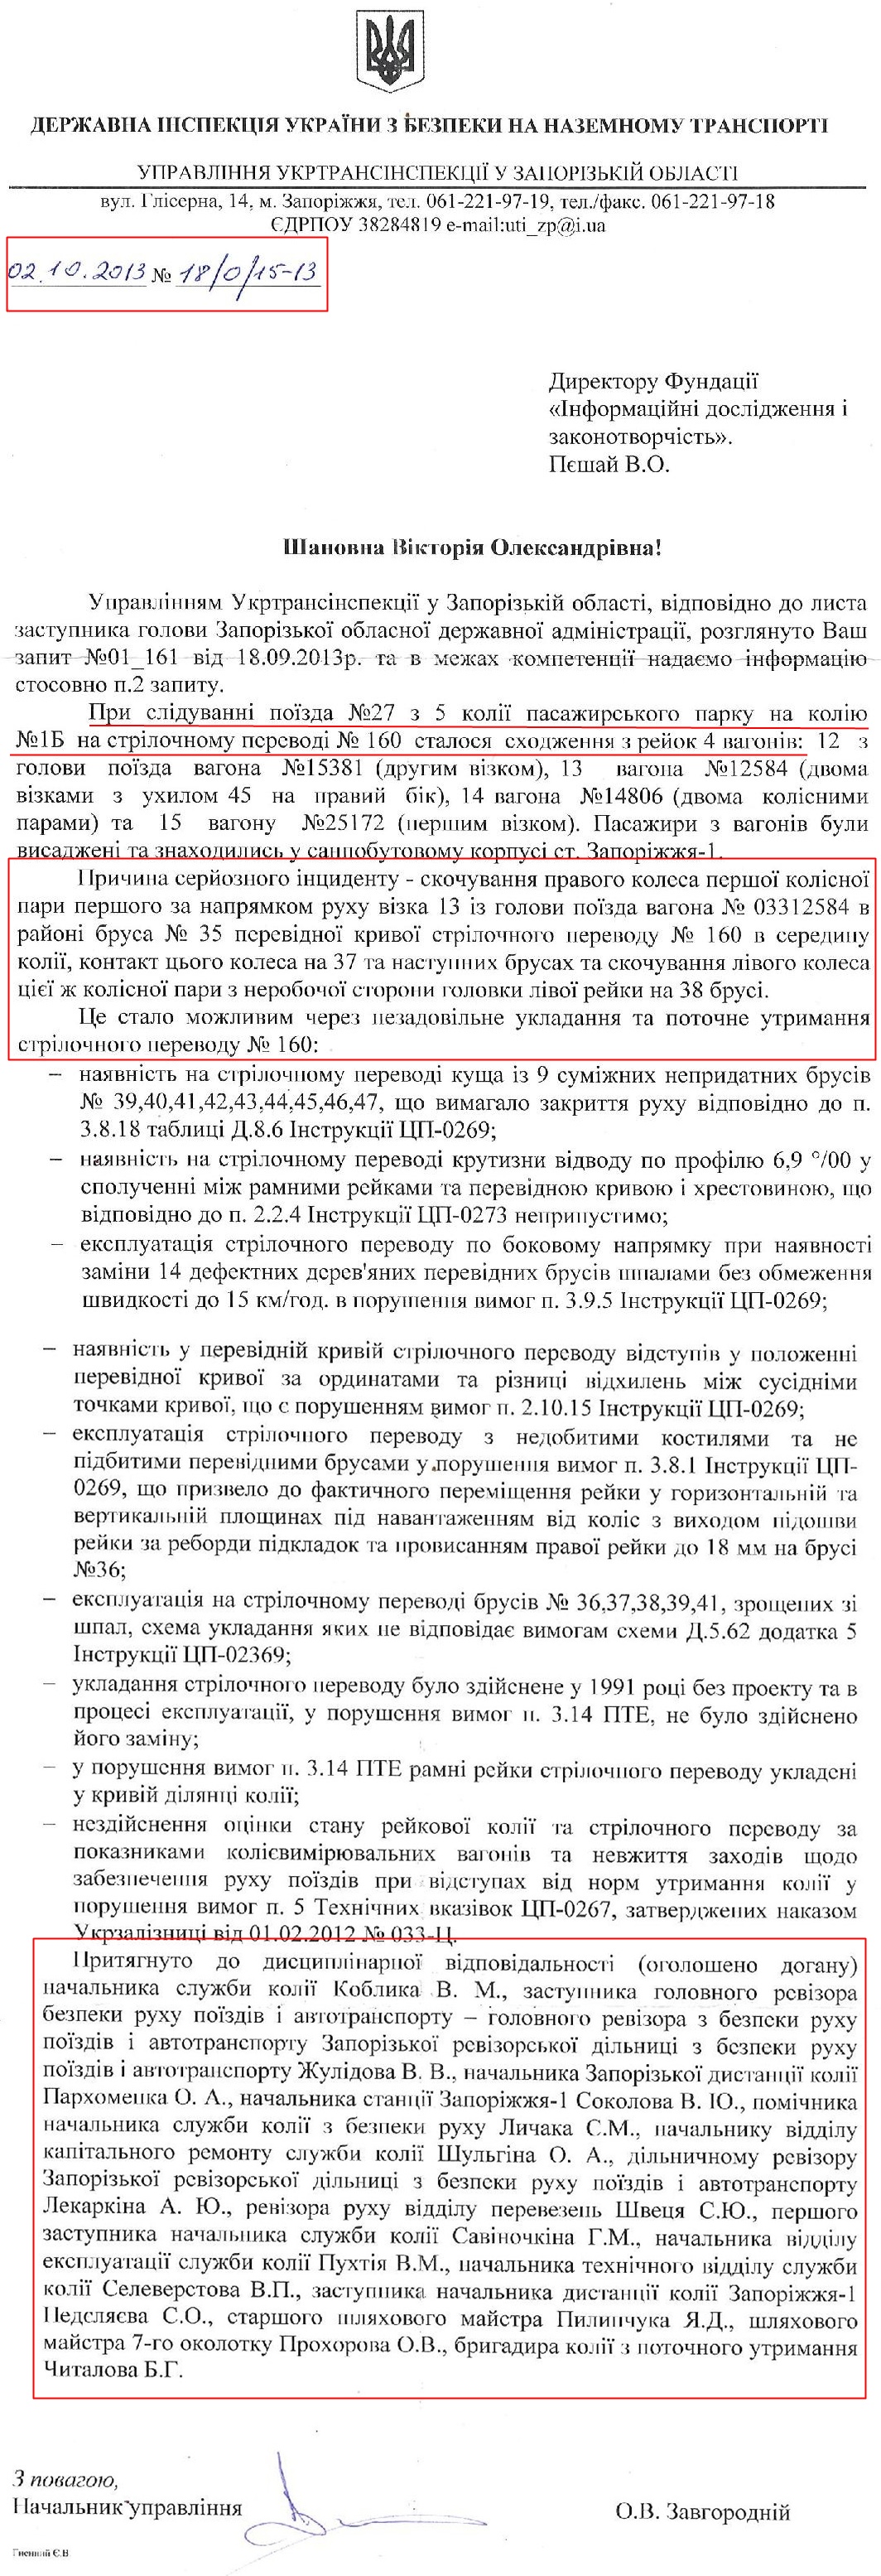 Лист Управління Укртрансінспекції у Запроізькій області від 2.10.2013